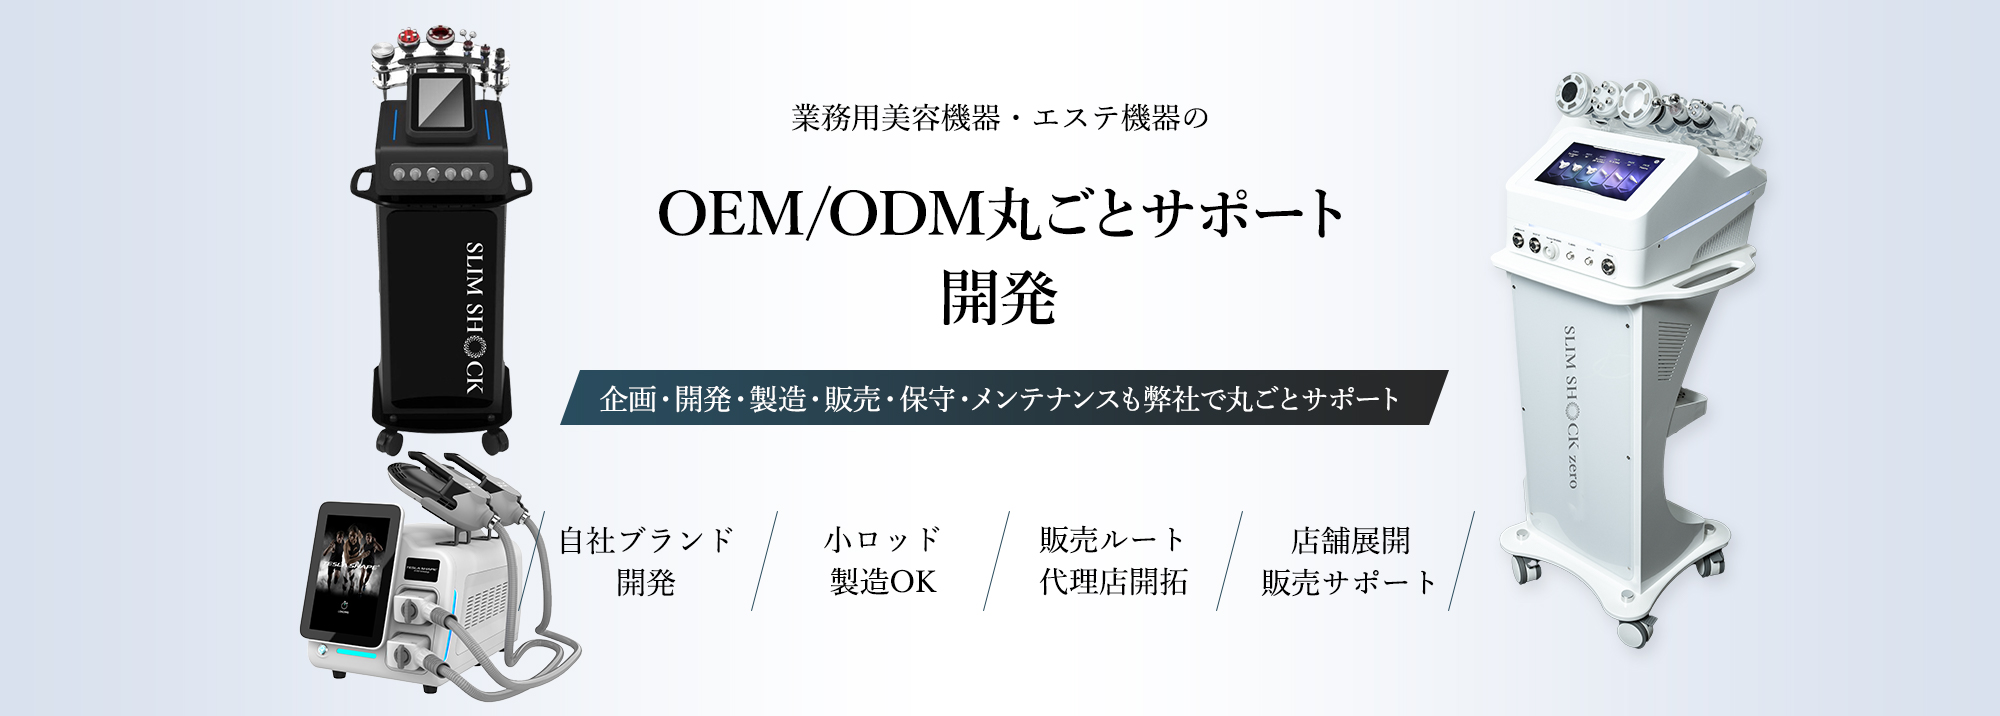 業務用美容機器・エステ機器のOEM/ODM丸ごとサポート開発